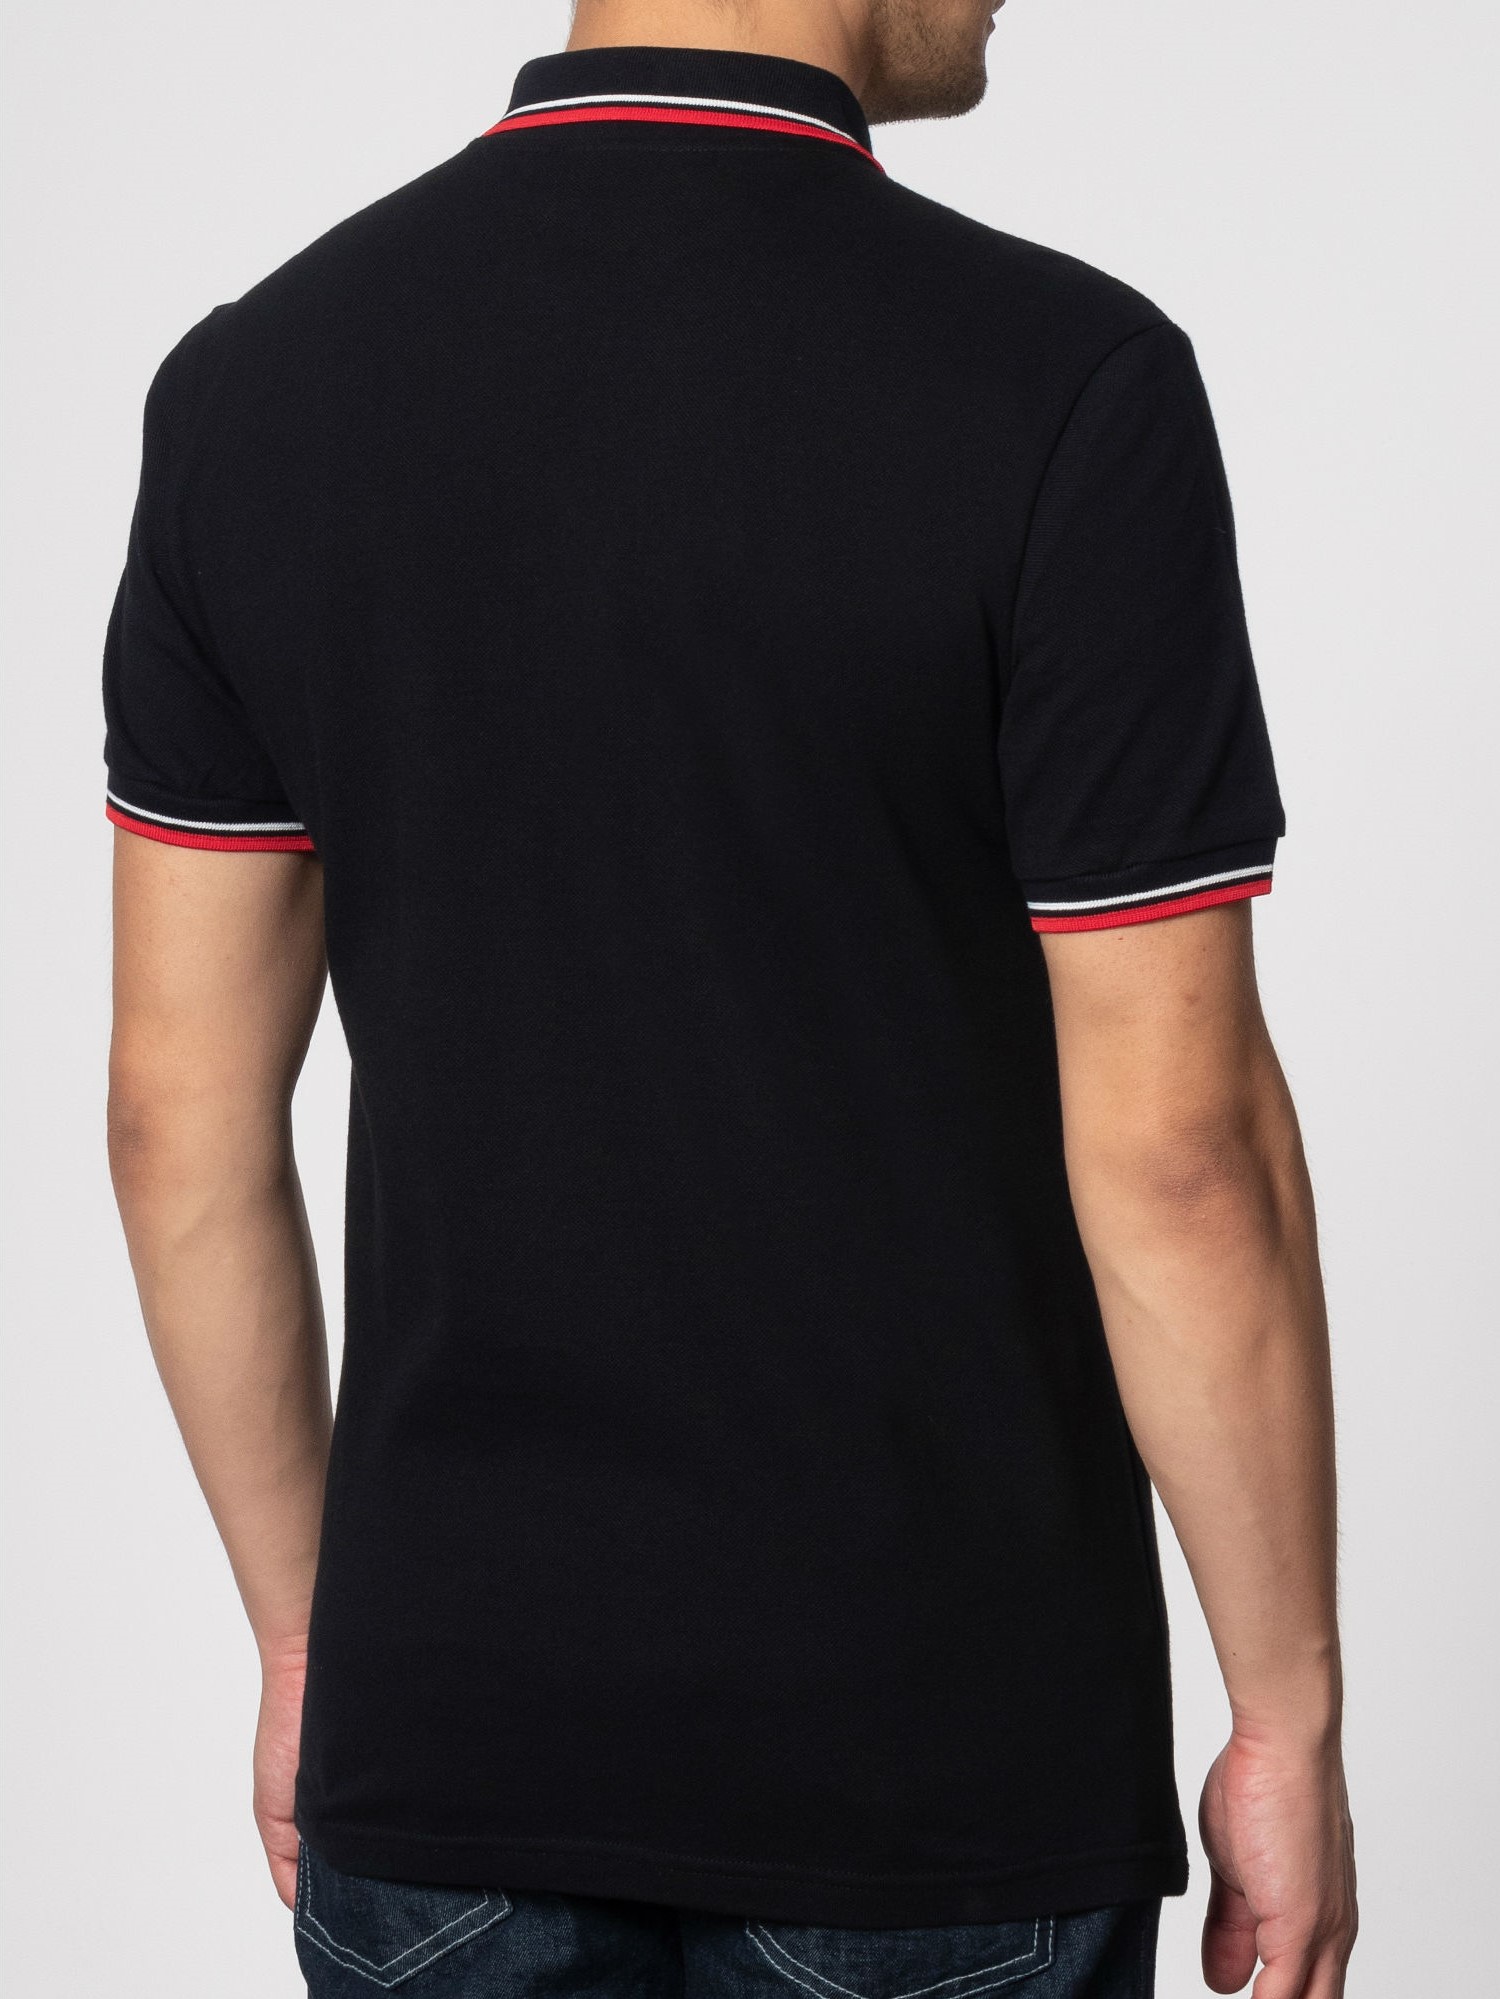 Мужская Рубашка Поло Card, хлопковая (пике), черная с красно-белой окантовкой (black) — купить в фирменном интернет магазине Merc